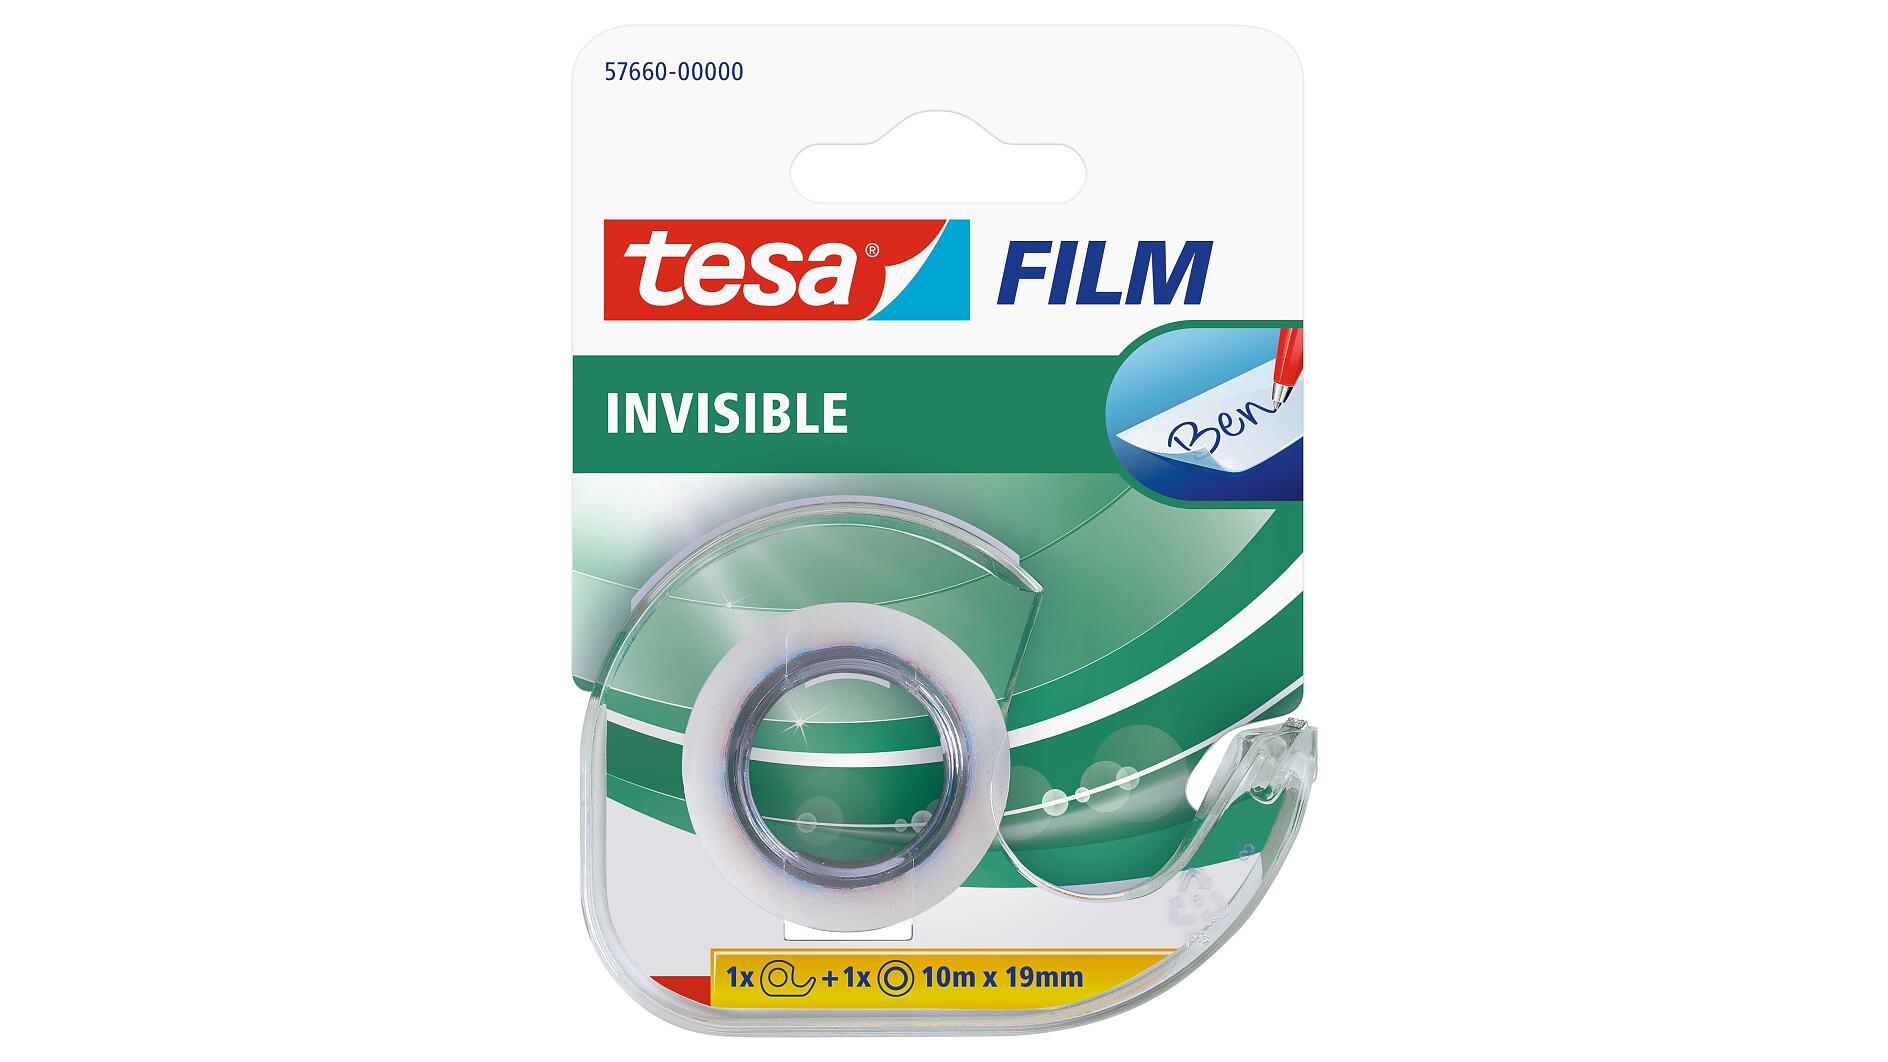 TESA FILM INVISIBLE 13mm x 33m